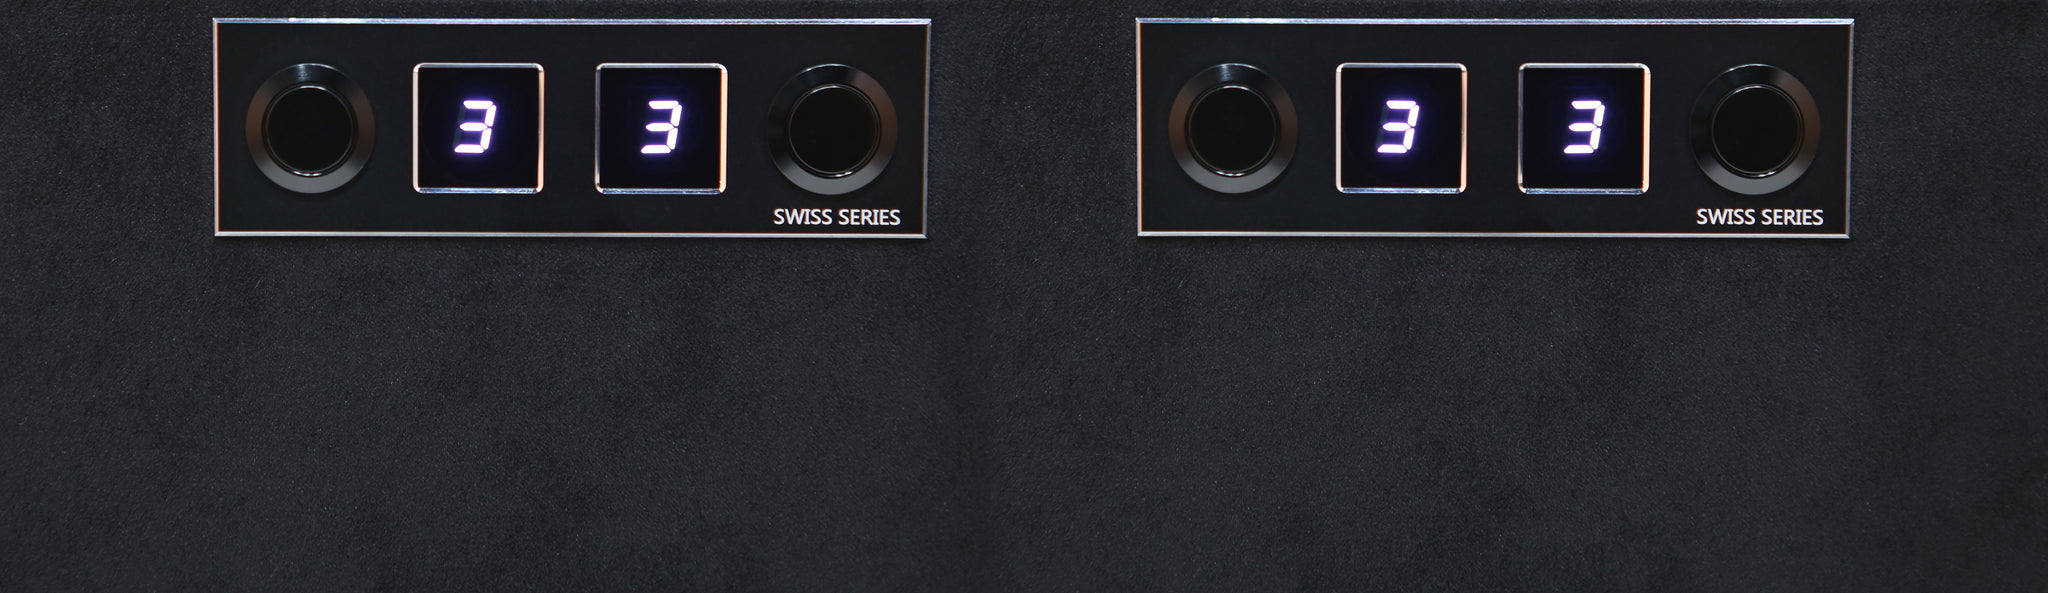 Remontoir de montre Benson Swiss Series